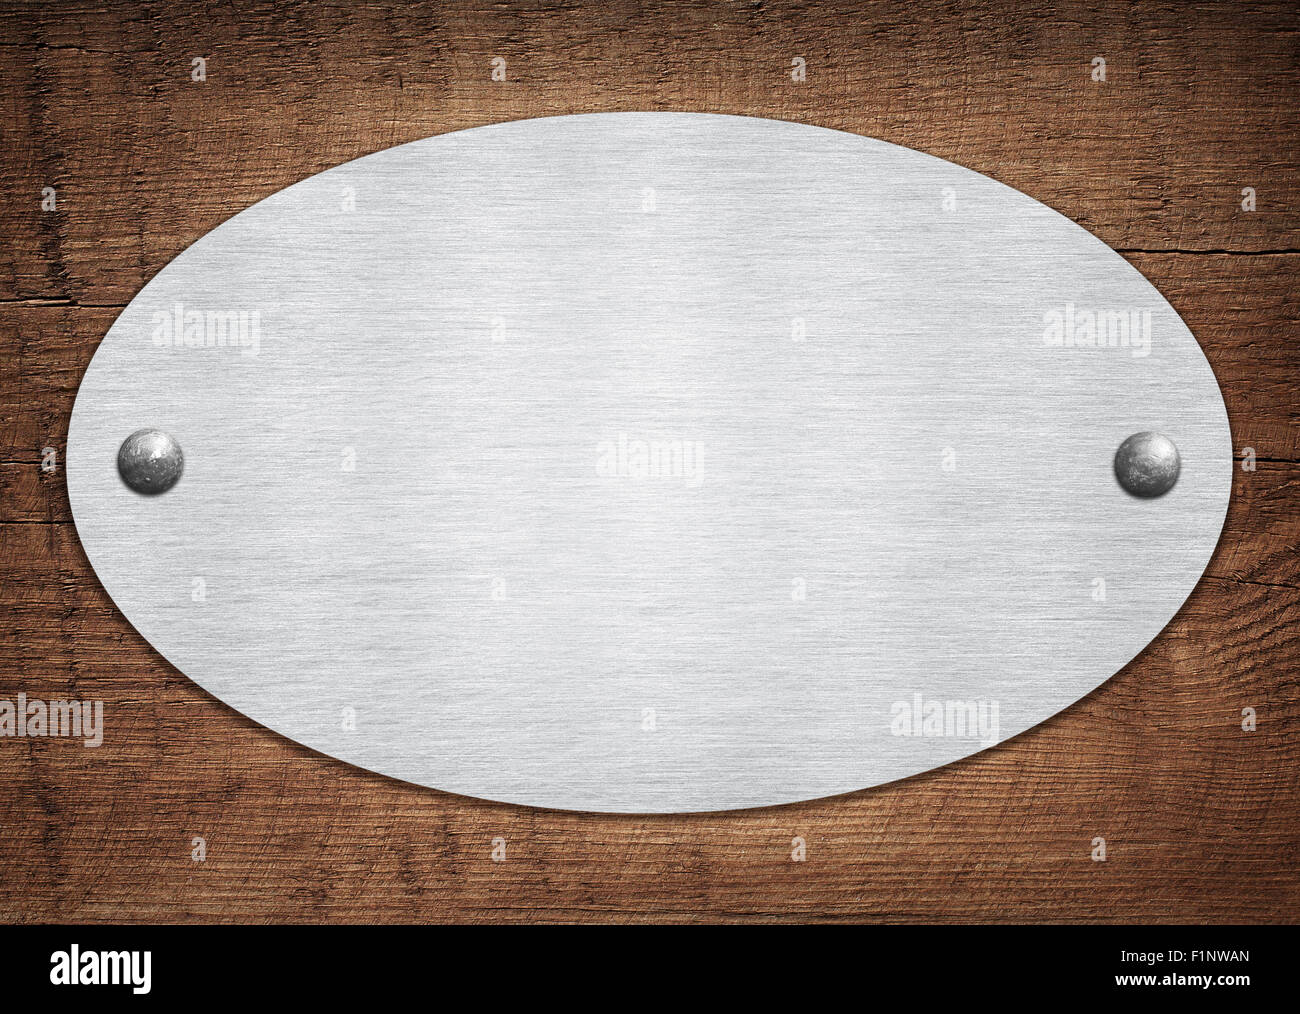 Composition de la plaque en métal aluminium, plaque sur planche en bois Banque D'Images